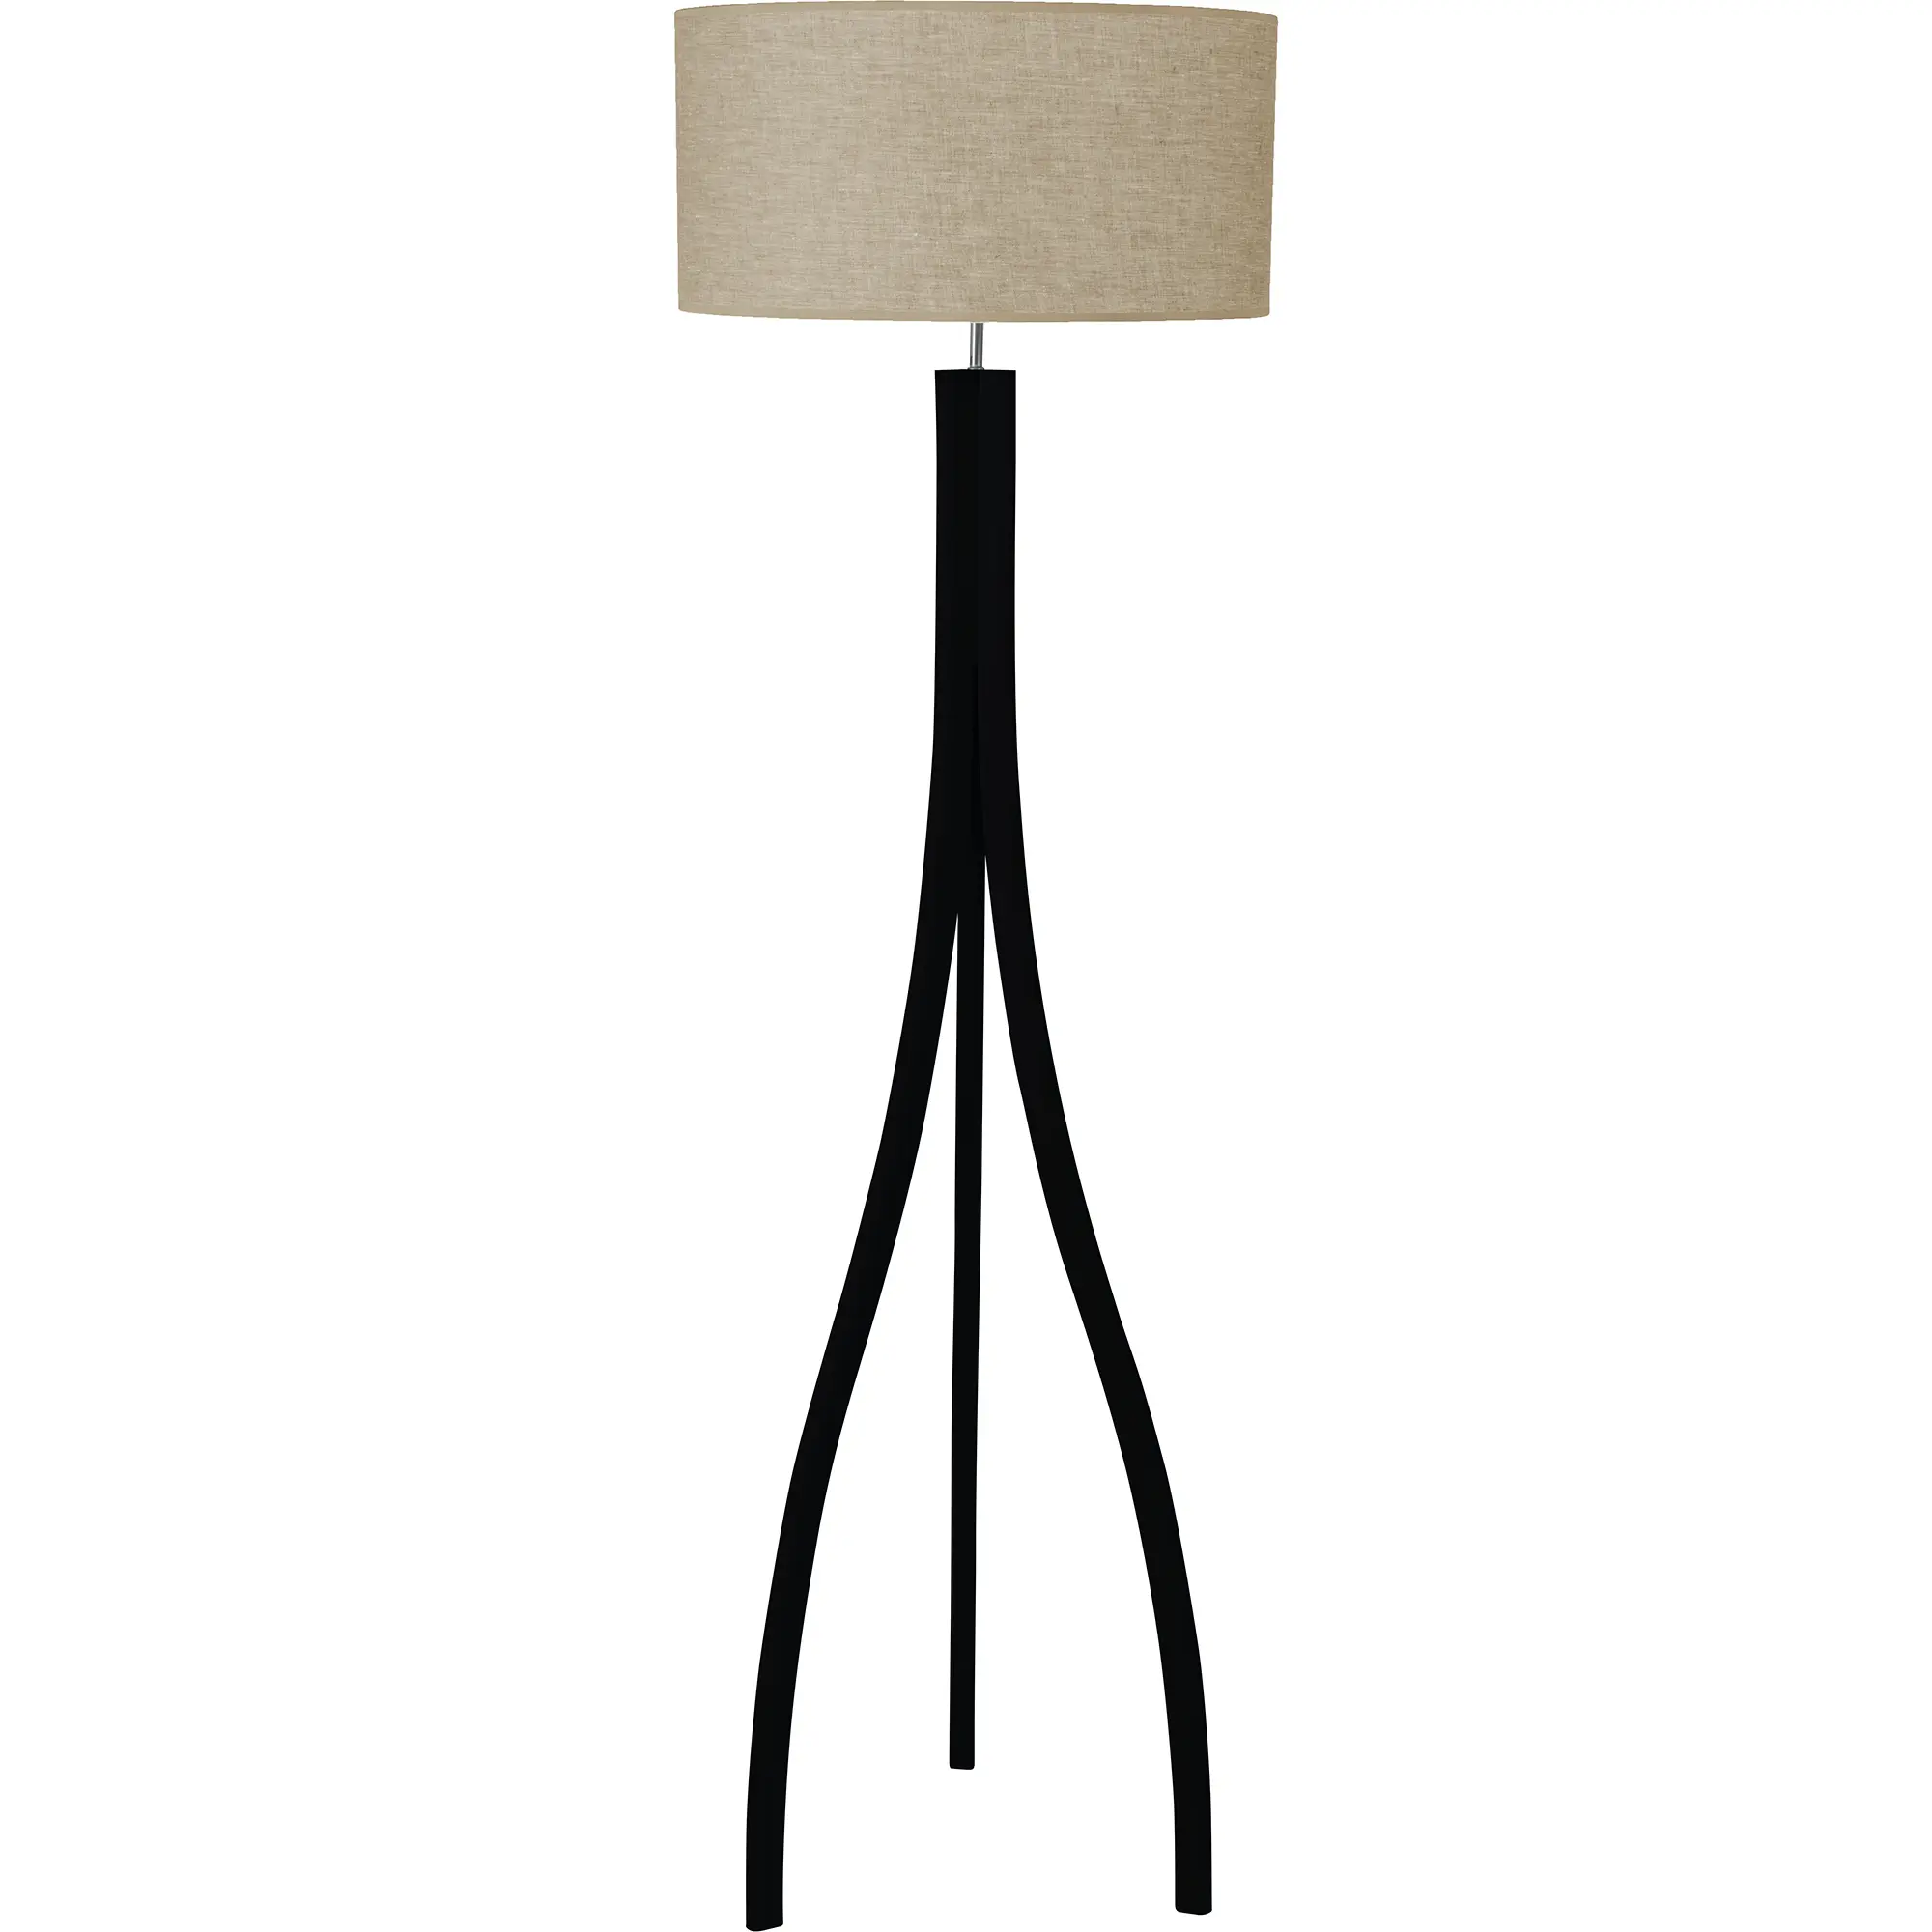 Holz-Stehlampe Skandinavia aus Esche in schwarz, grau, braun